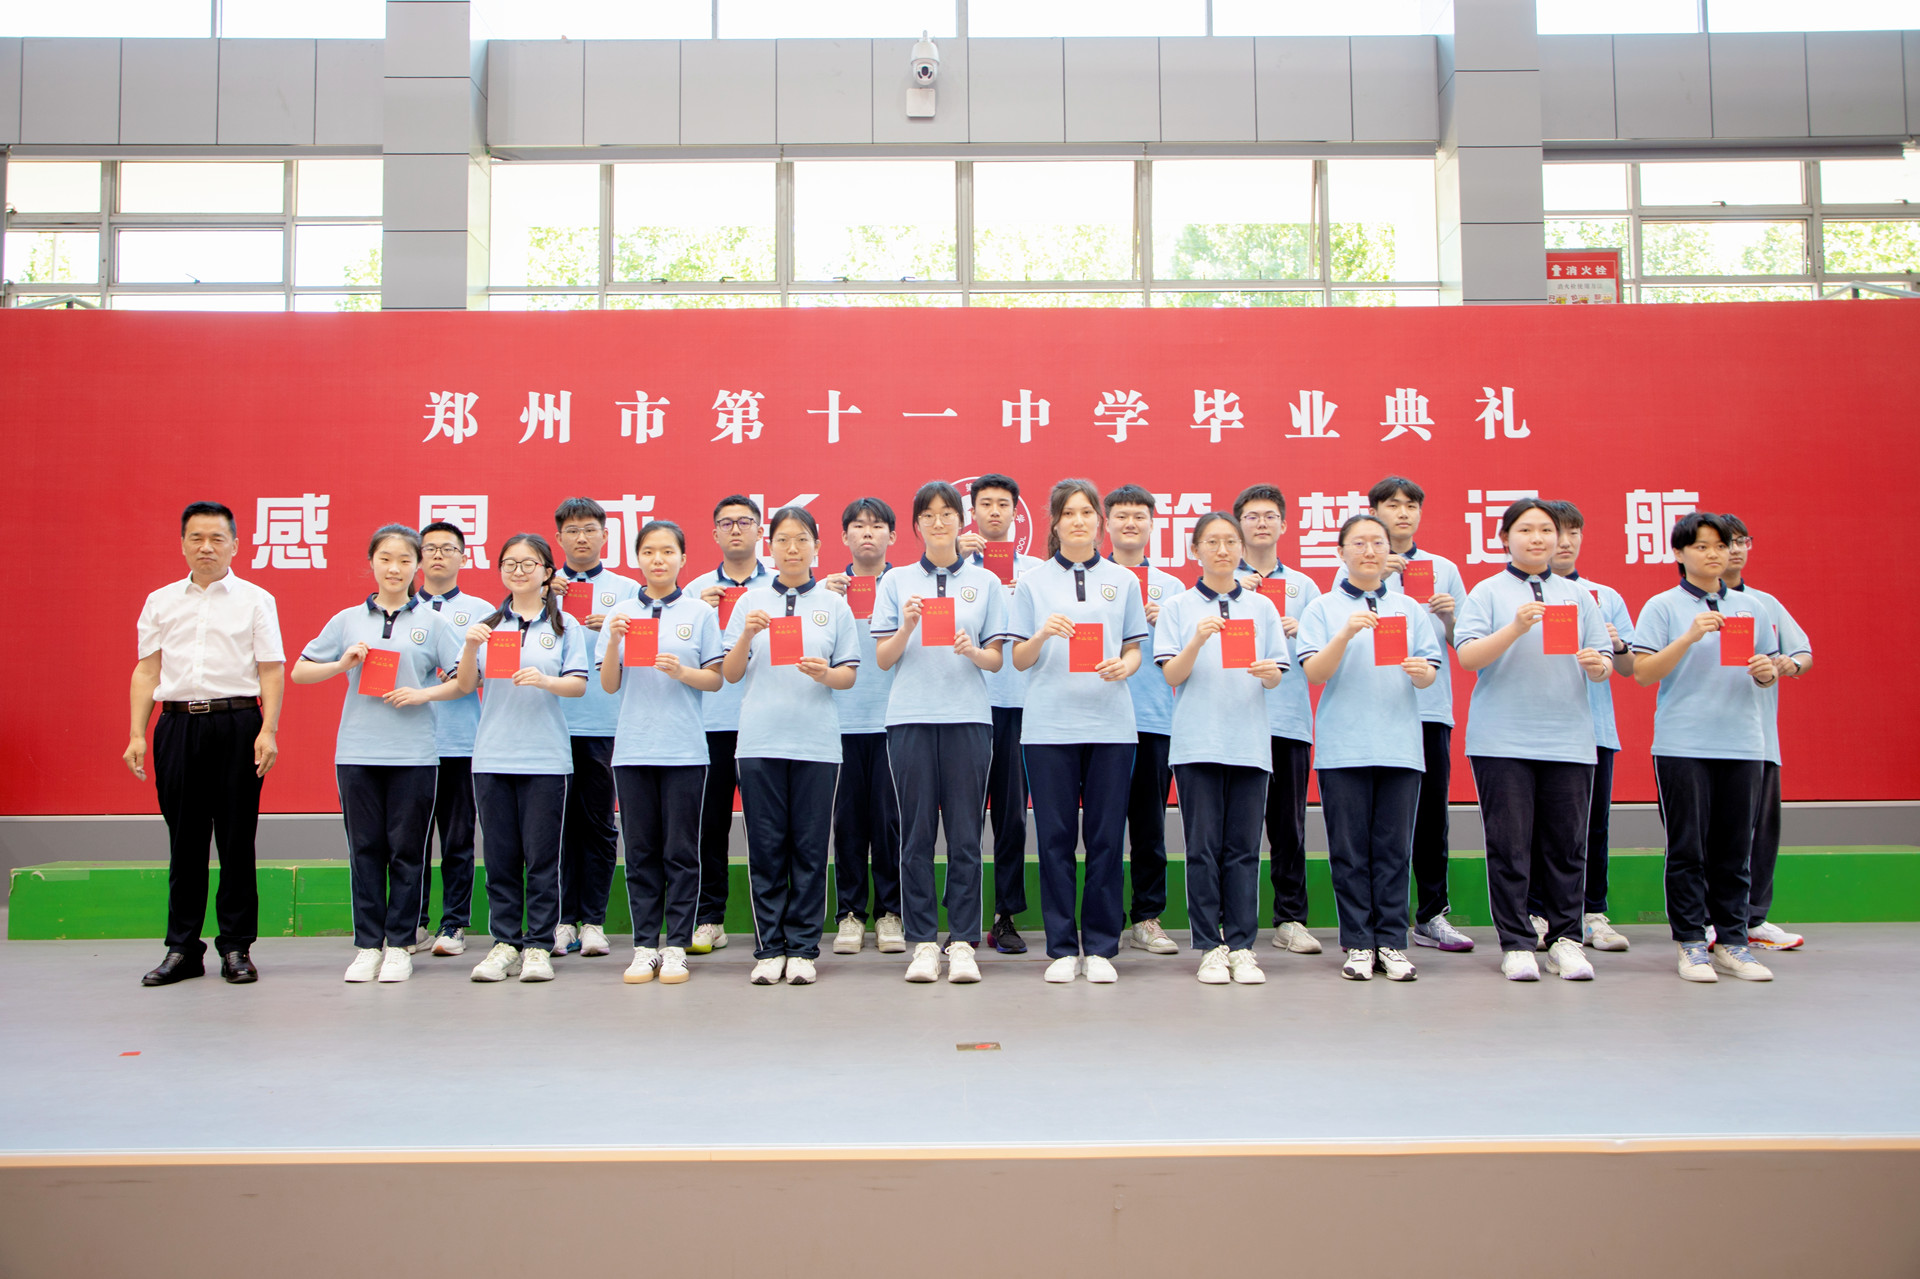 您好欢迎访问郑州市第十一中学网站